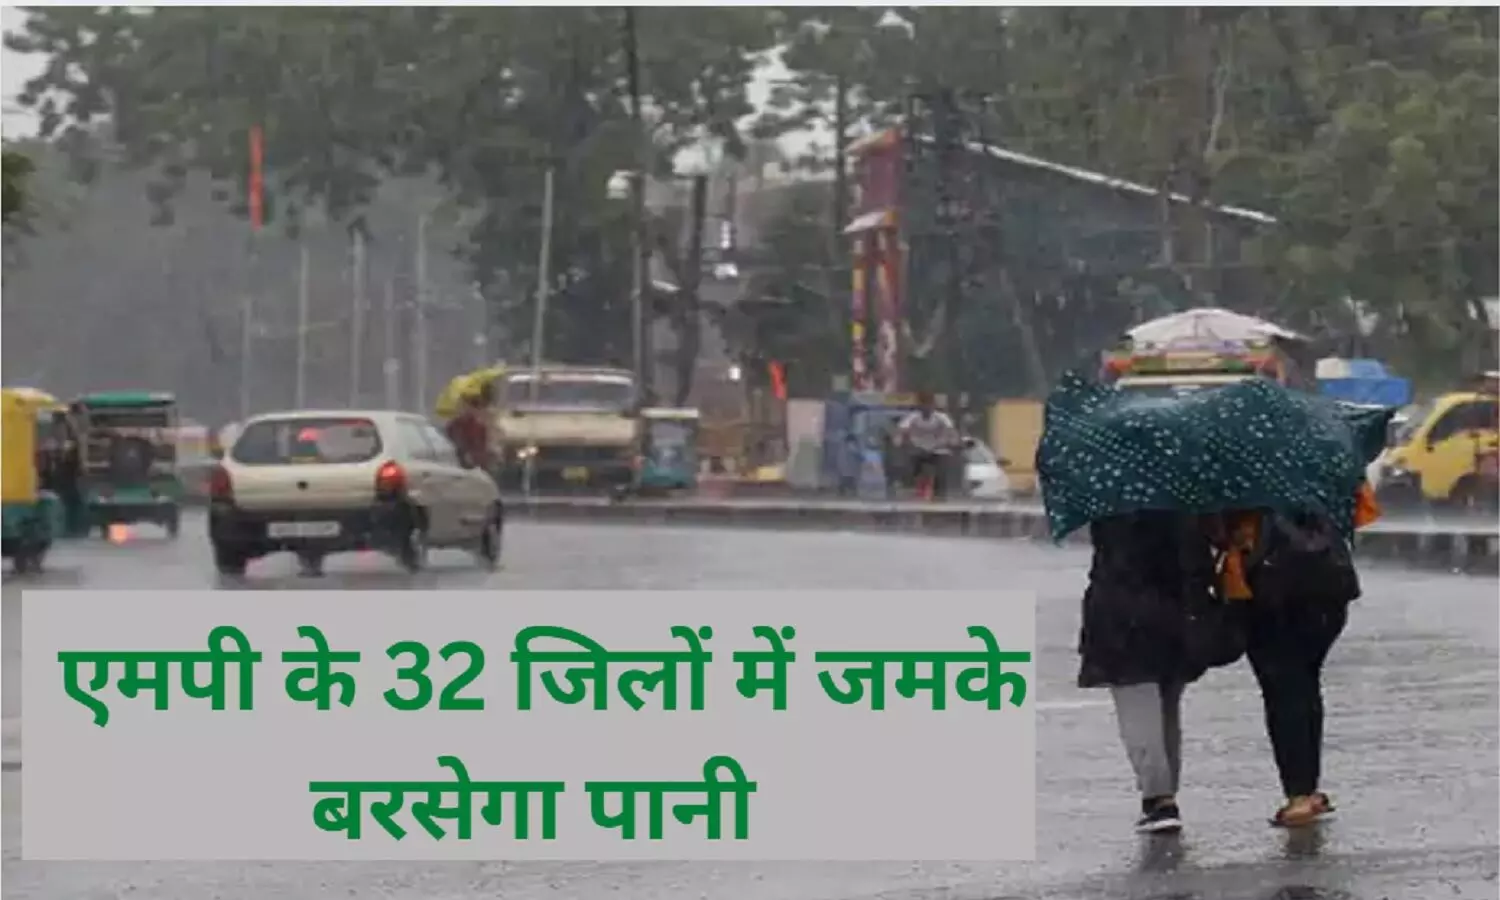 MP Heavy Rain Alert: एमपी में 72 घंटो तक बारिश का अलर्ट, इन 32 जिलों में होगी झमाझम बारिश